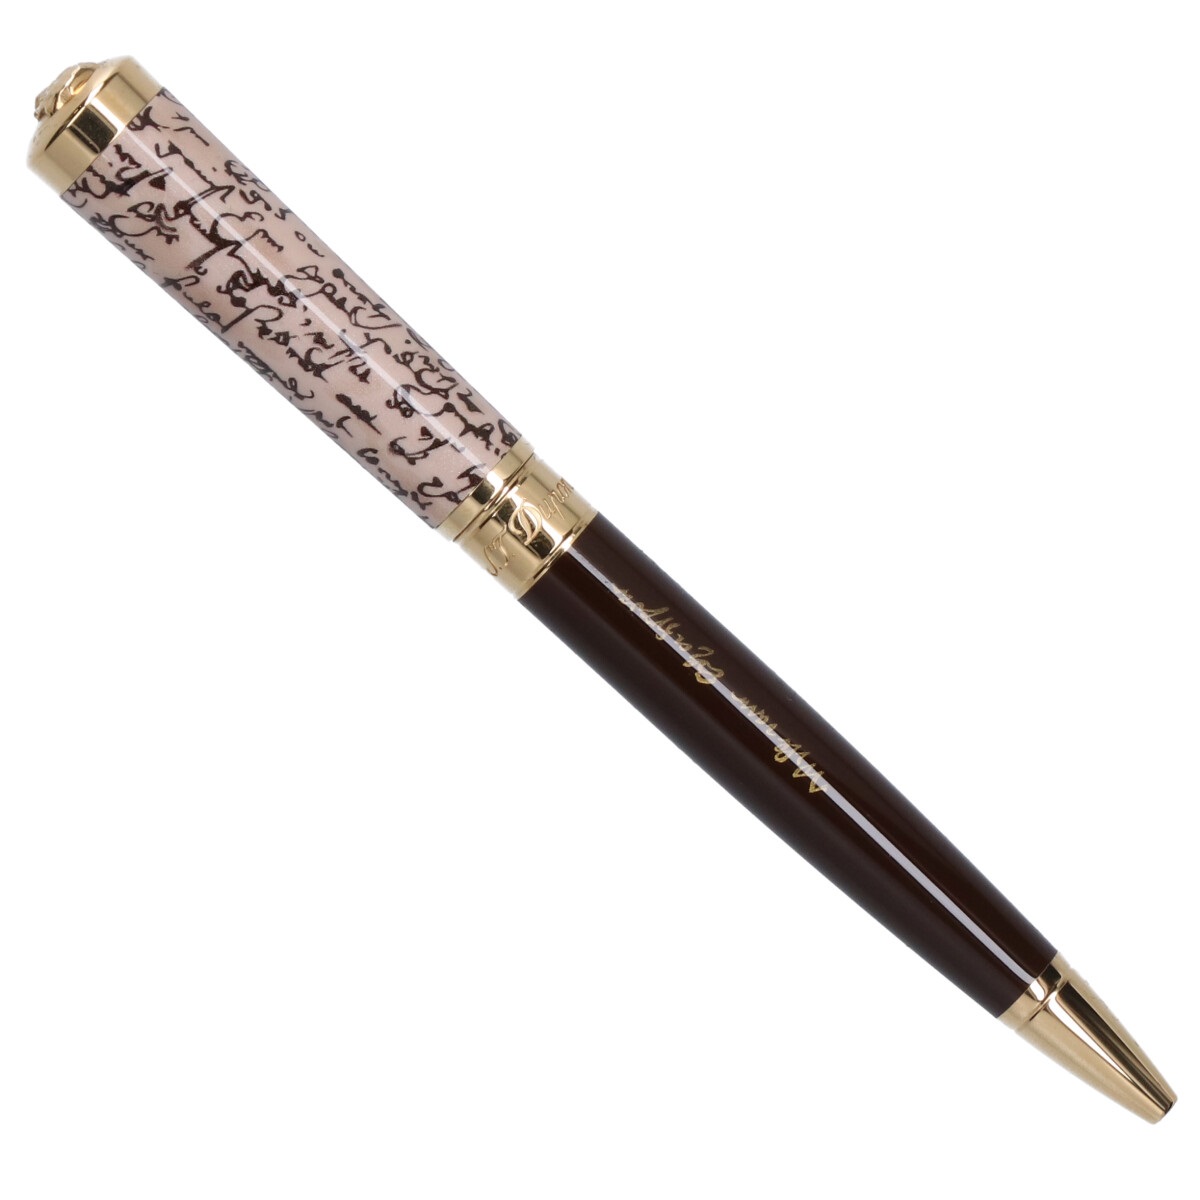 デュポンの295103 スウォードコレクション ウィリアム・シェイクスピア ツイスト式ボールペンの買取実績です。